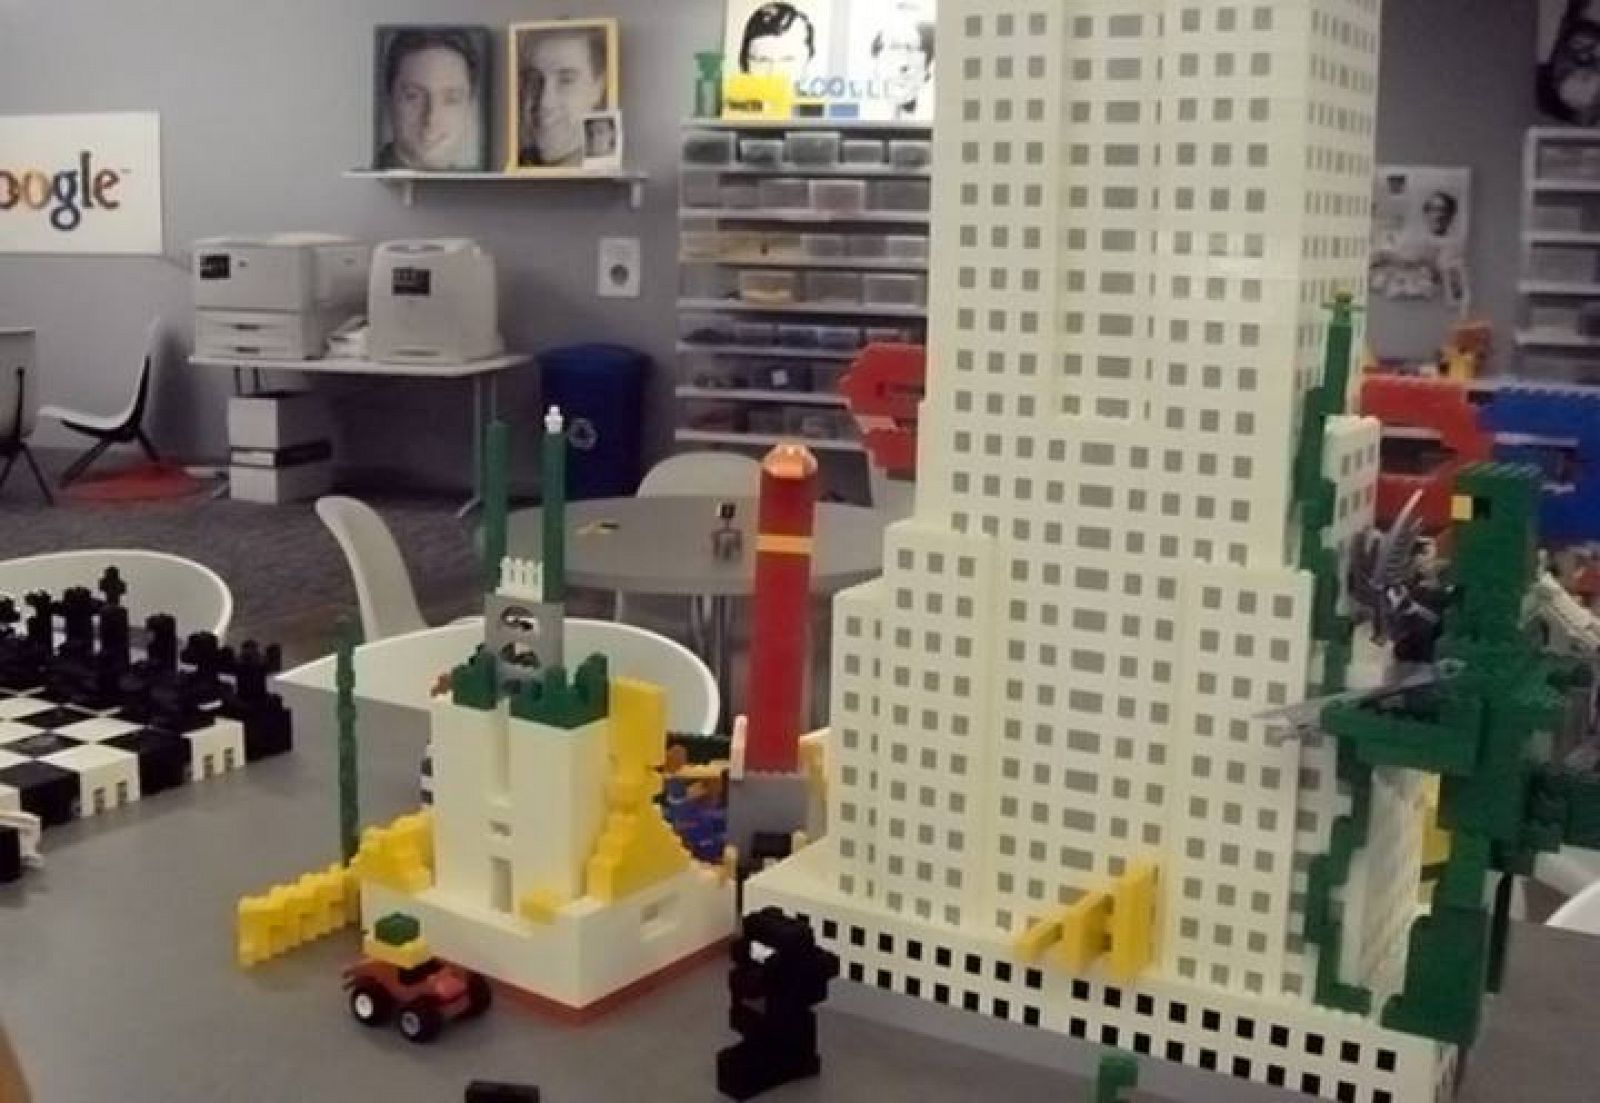 Misionero subterráneo Paisaje Lego y Google crean un juego online | RTVE.es